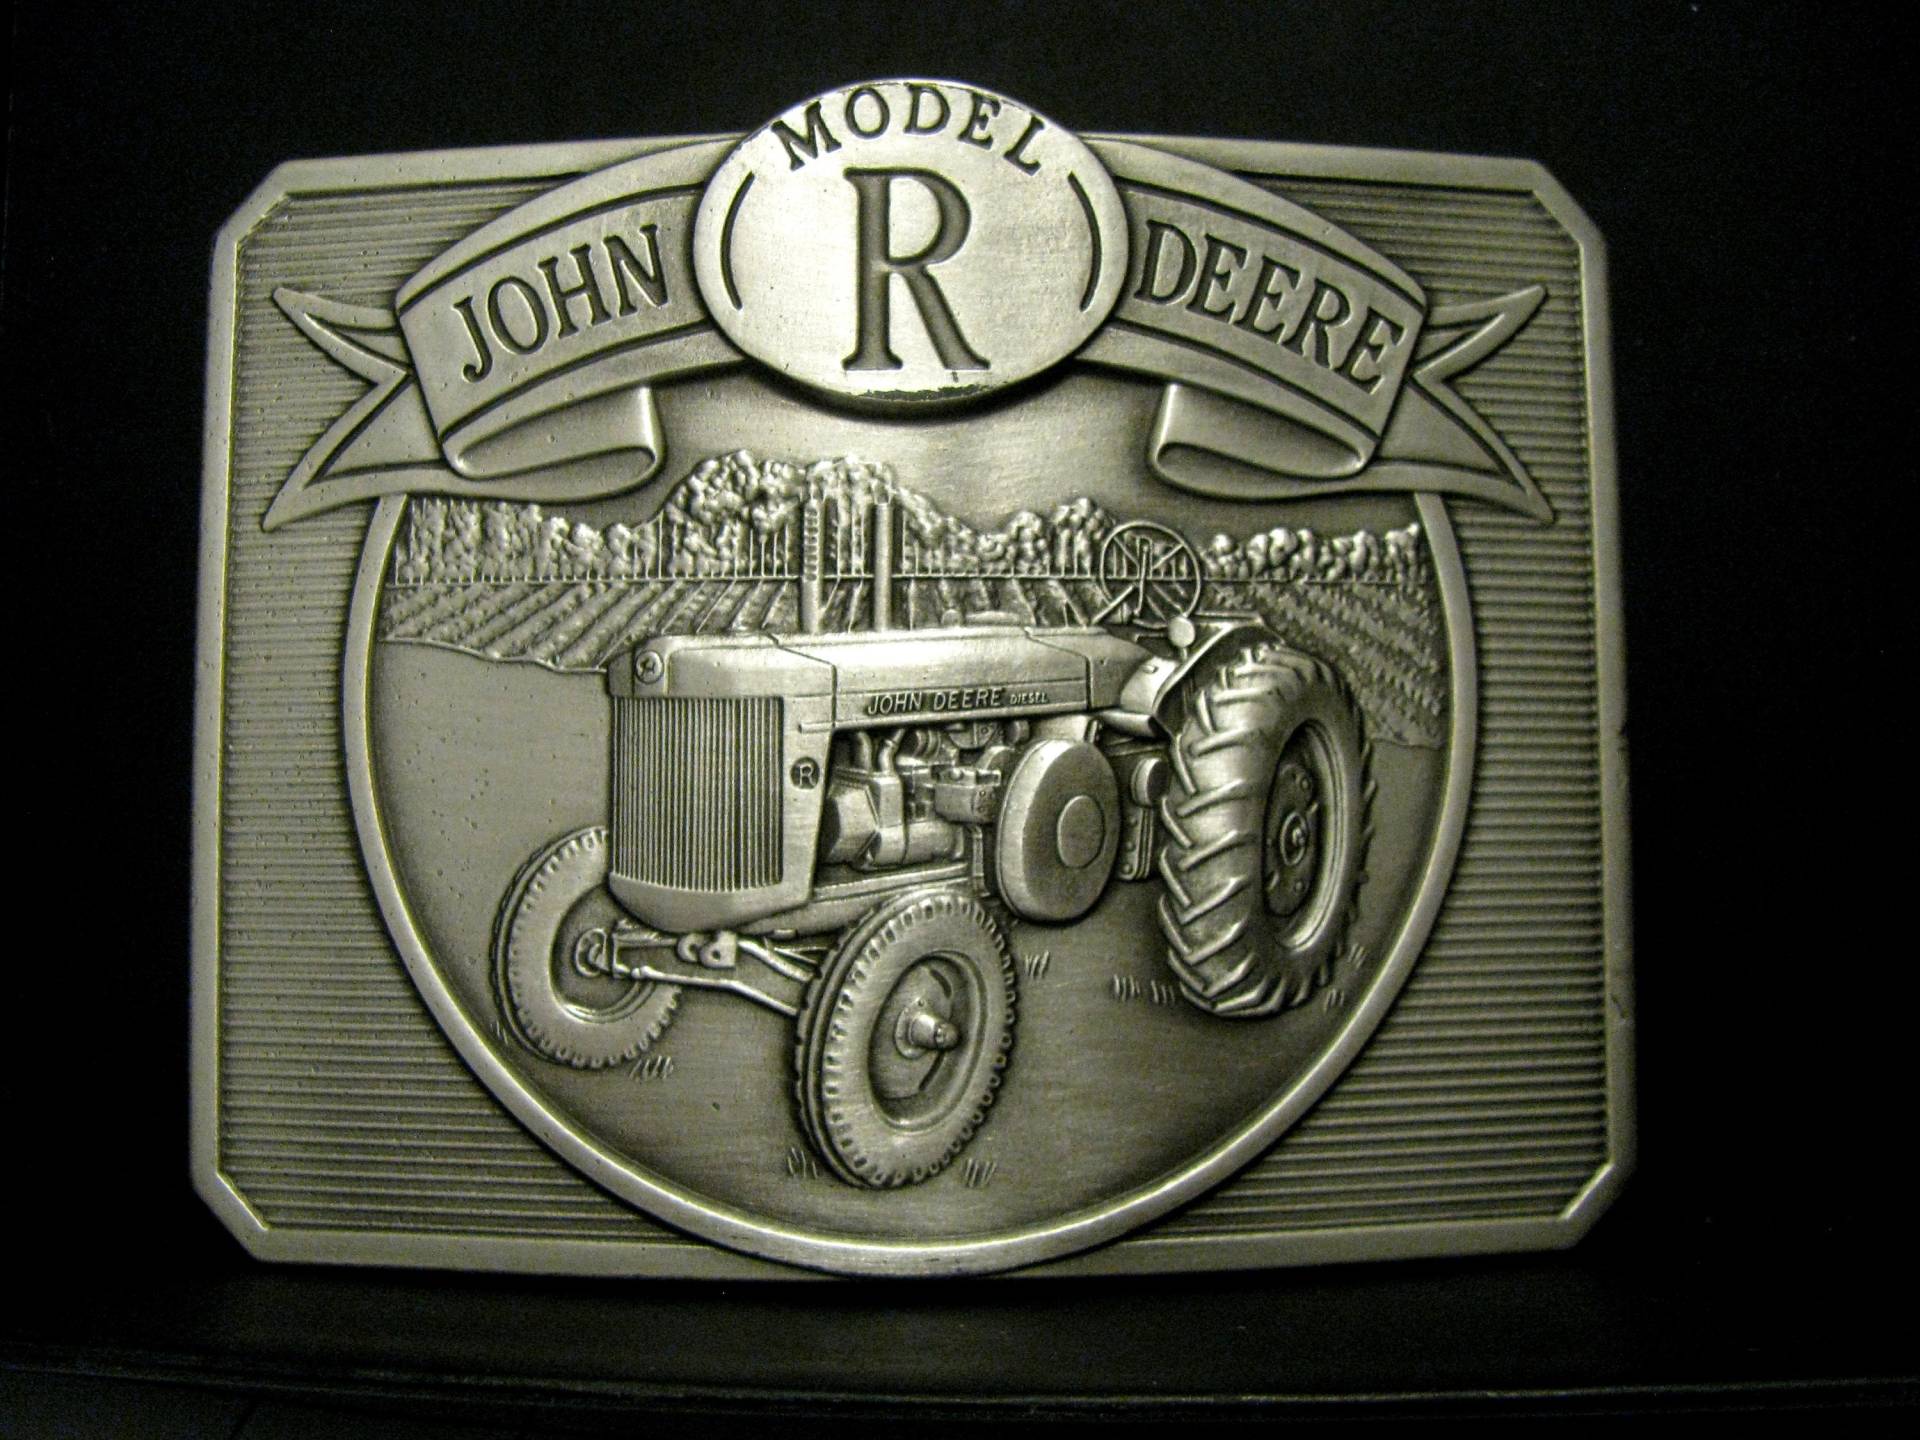 John Deere 1948 Modell R Zweizylinder Traktor Versilbert 1990 Gürtelschnalle Jd Collectible von BeyerTractor